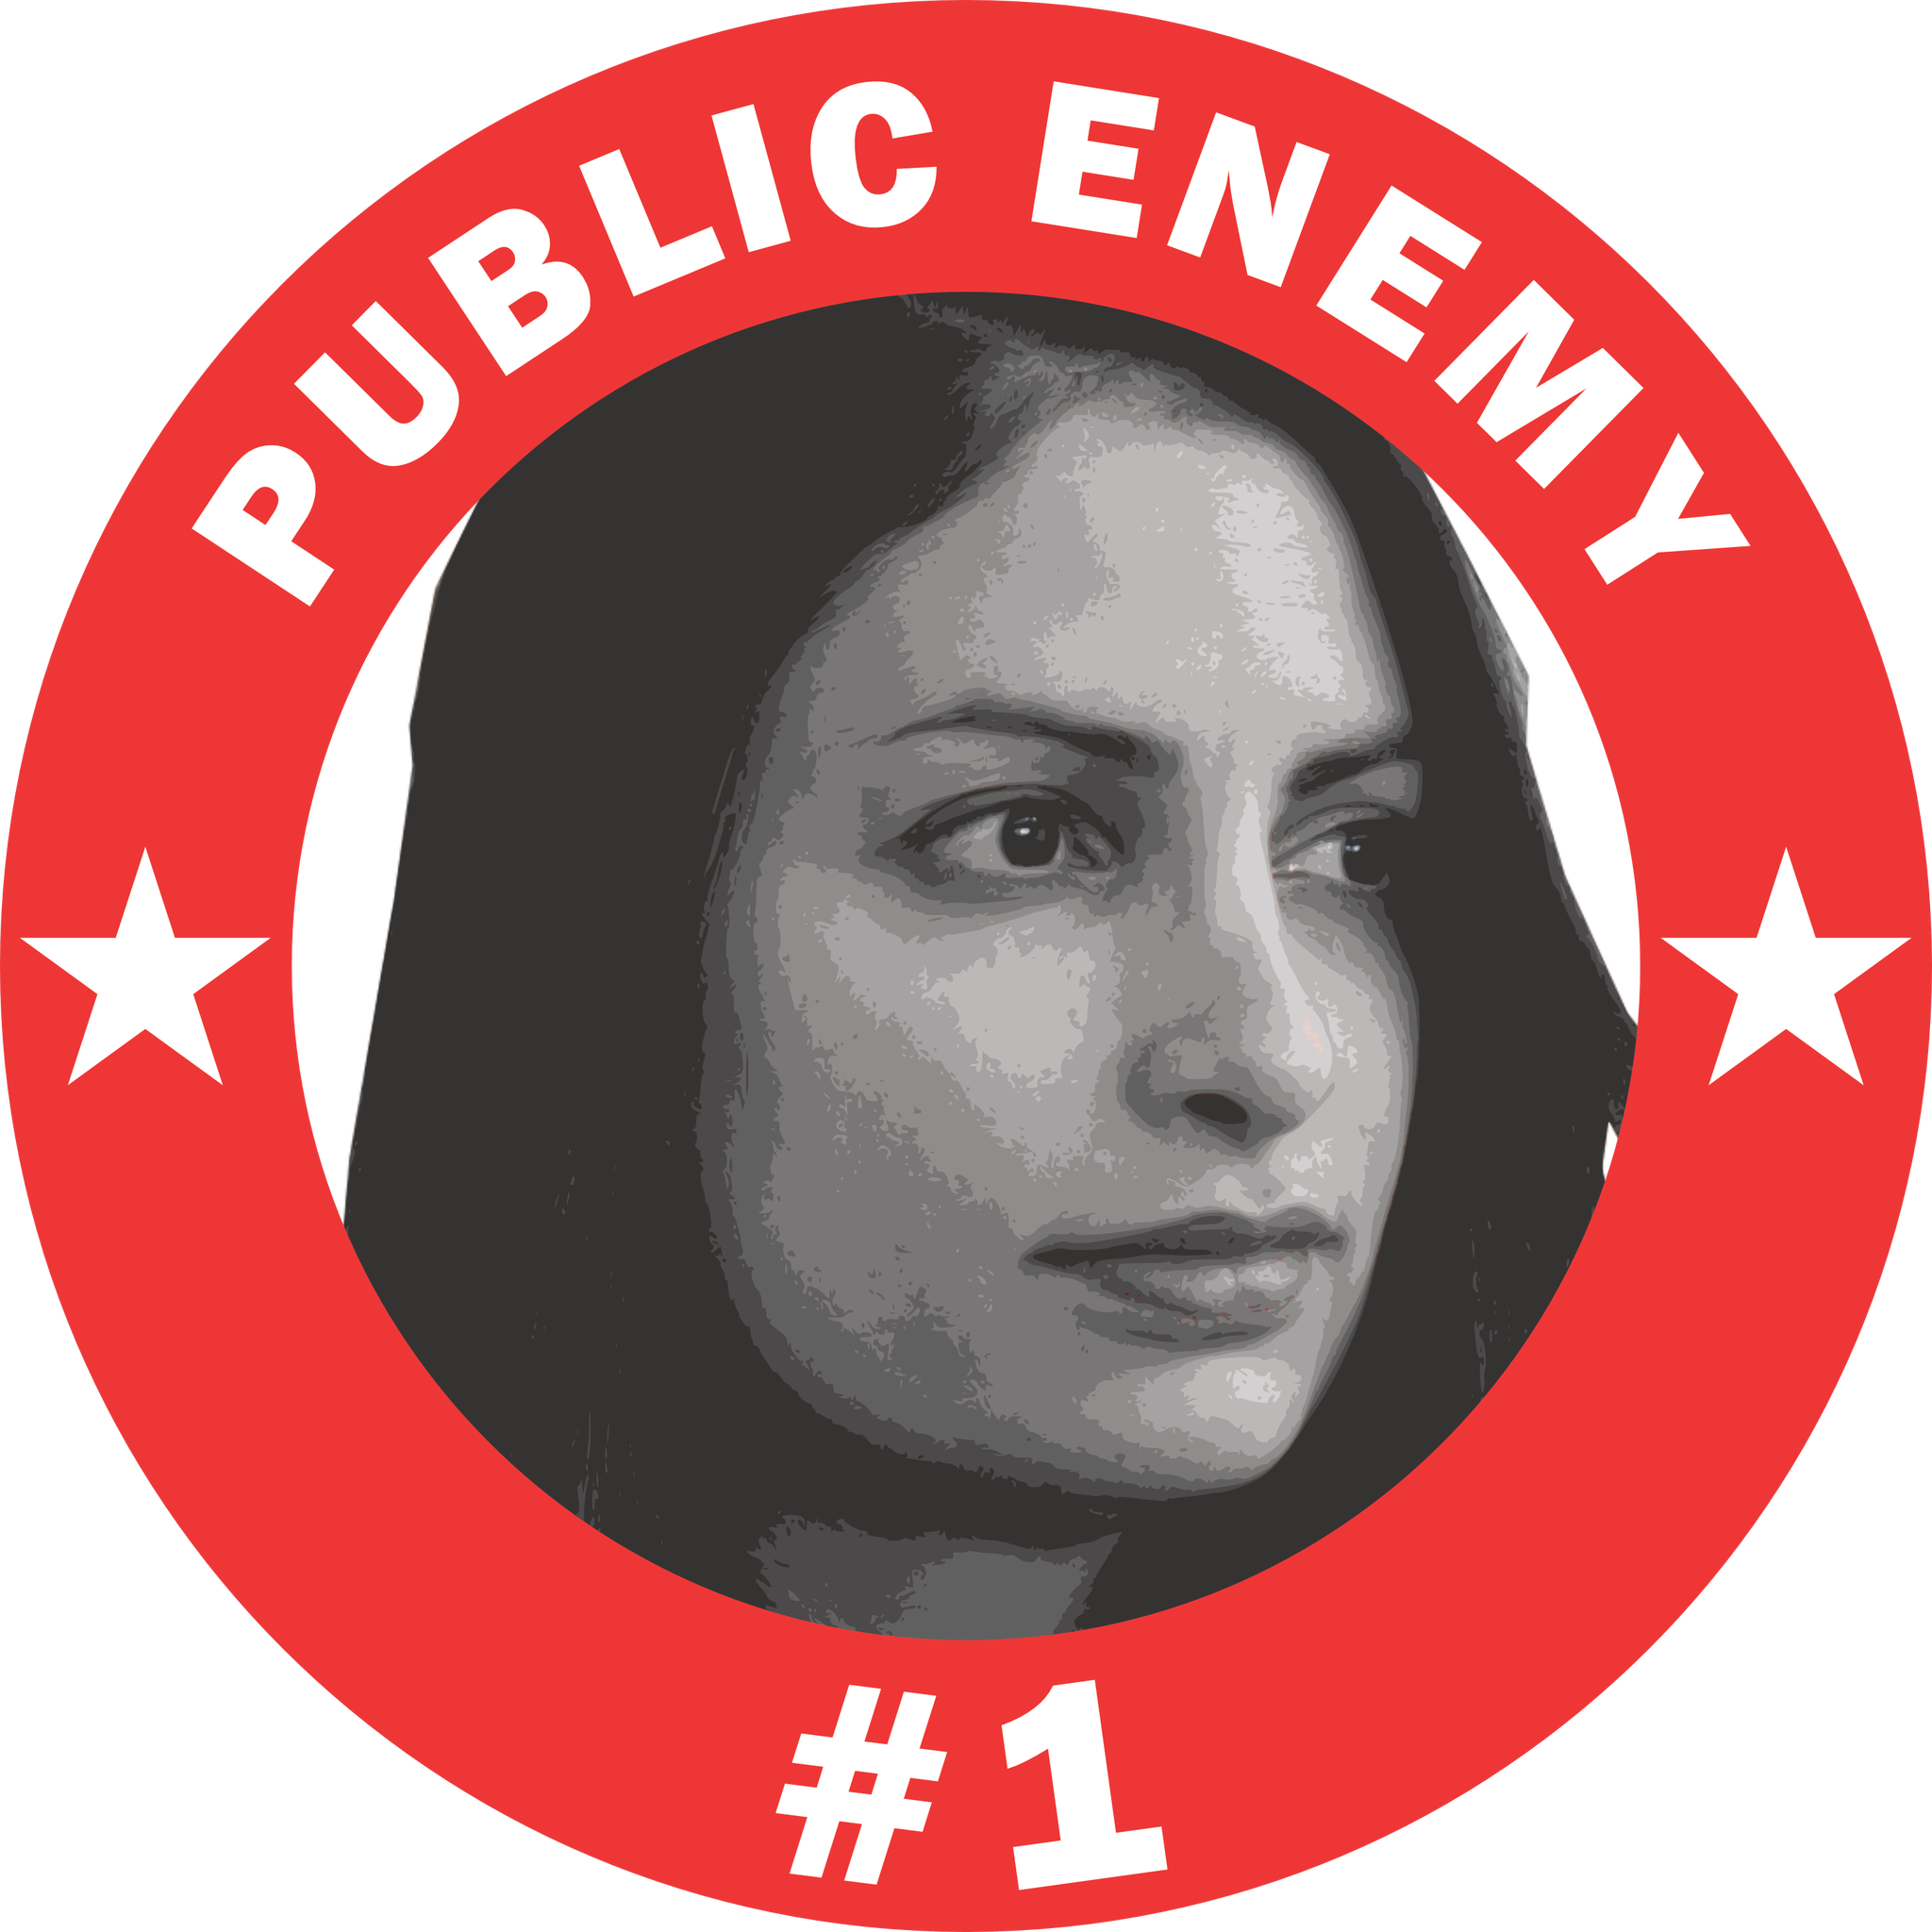 Dadgostar Public Enemy #1 T-Shirt Herr